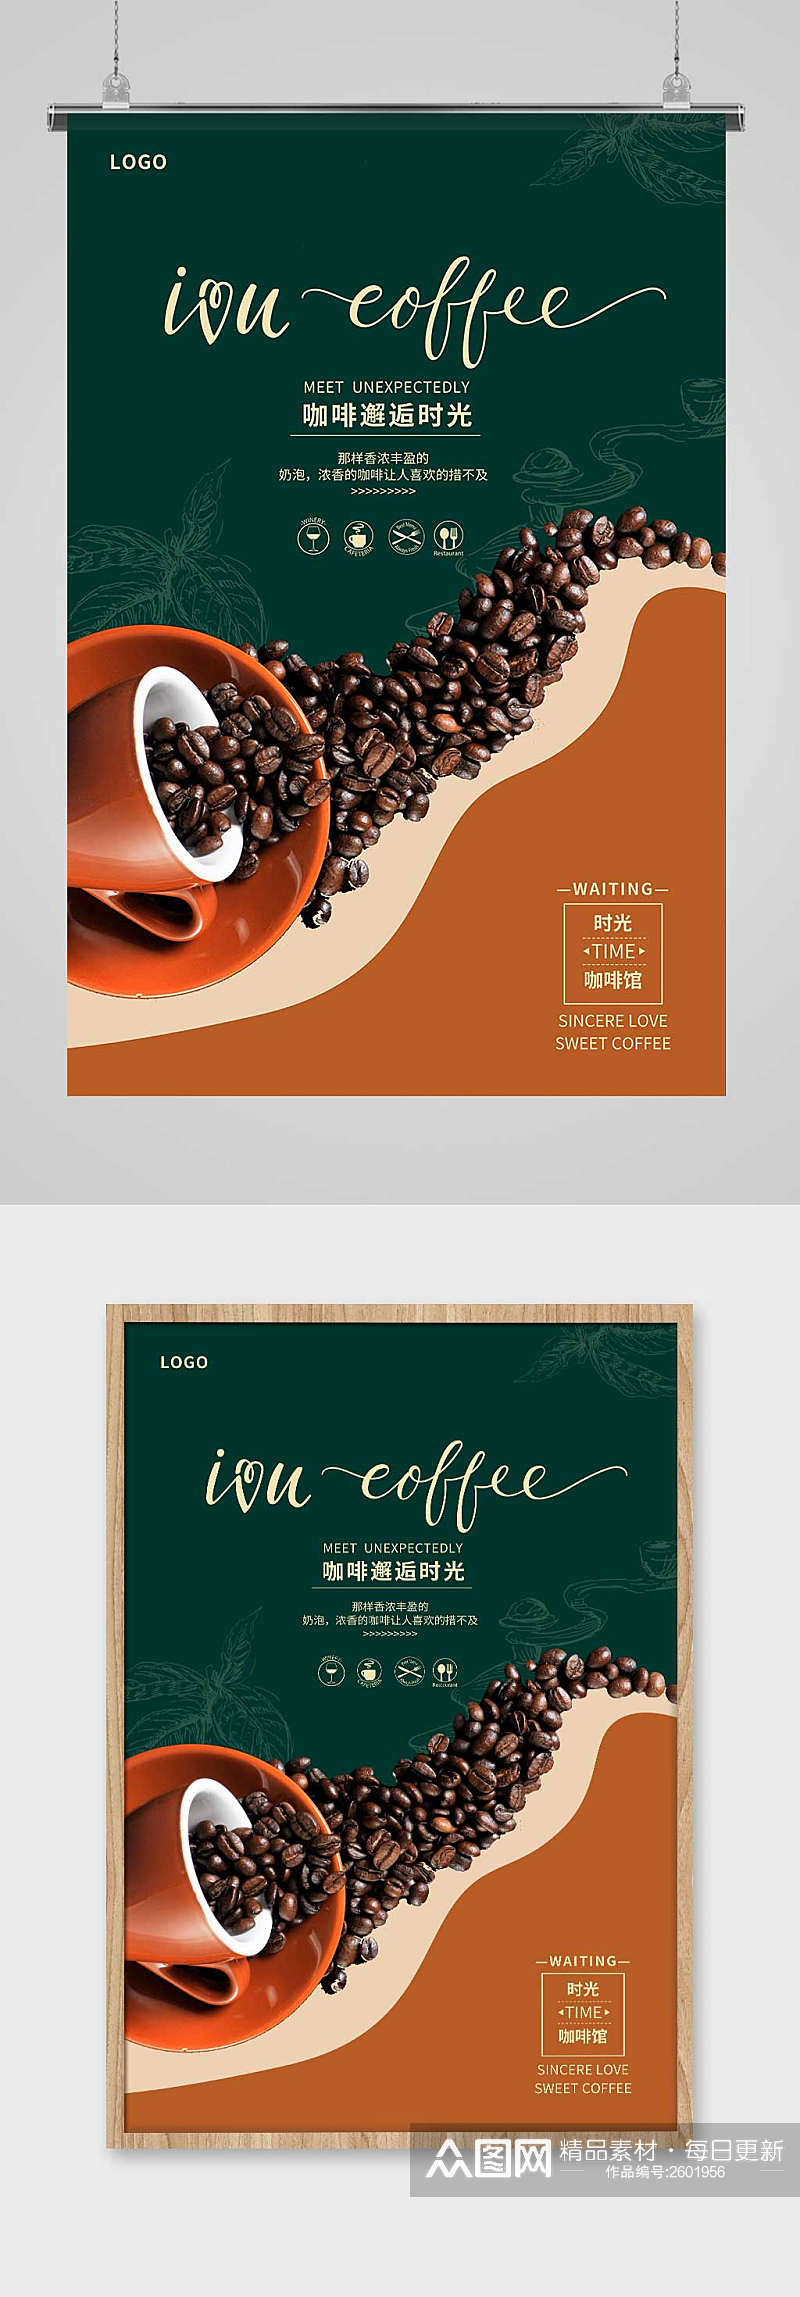 绿色创意美味咖啡促销宣传海报设计素材